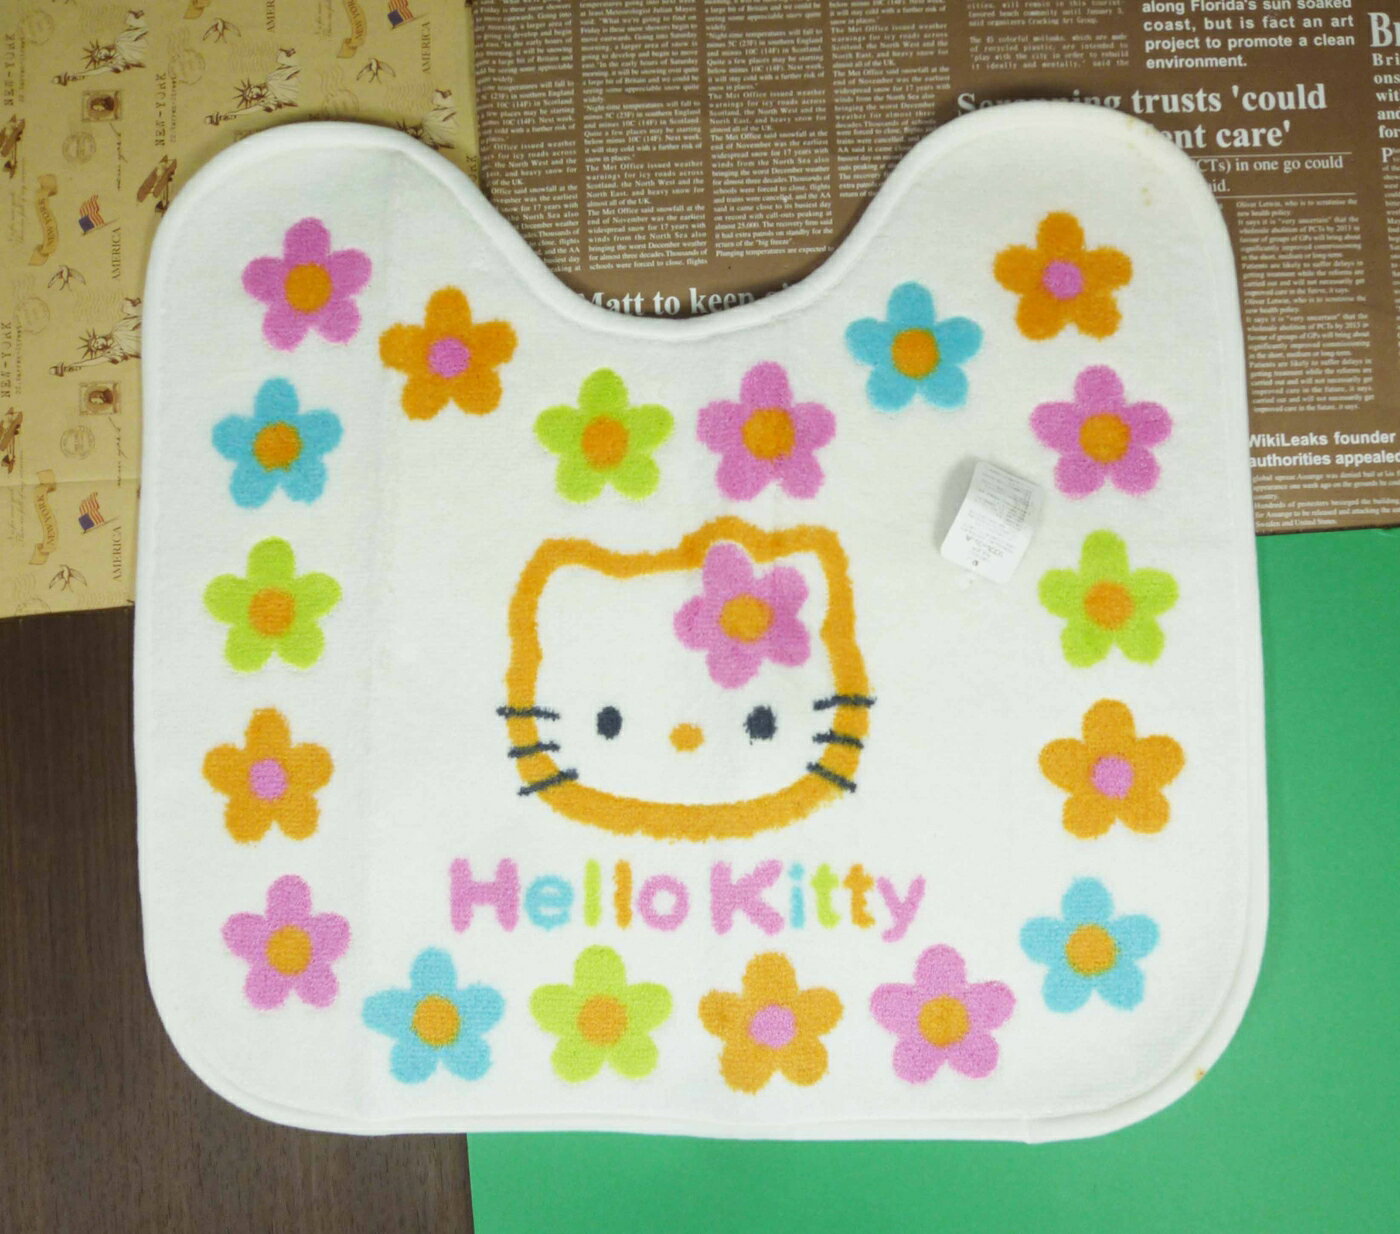 【震撼精品百貨】Hello Kitty 凱蒂貓 馬桶前踏墊 百花圖案 震撼日式精品百貨